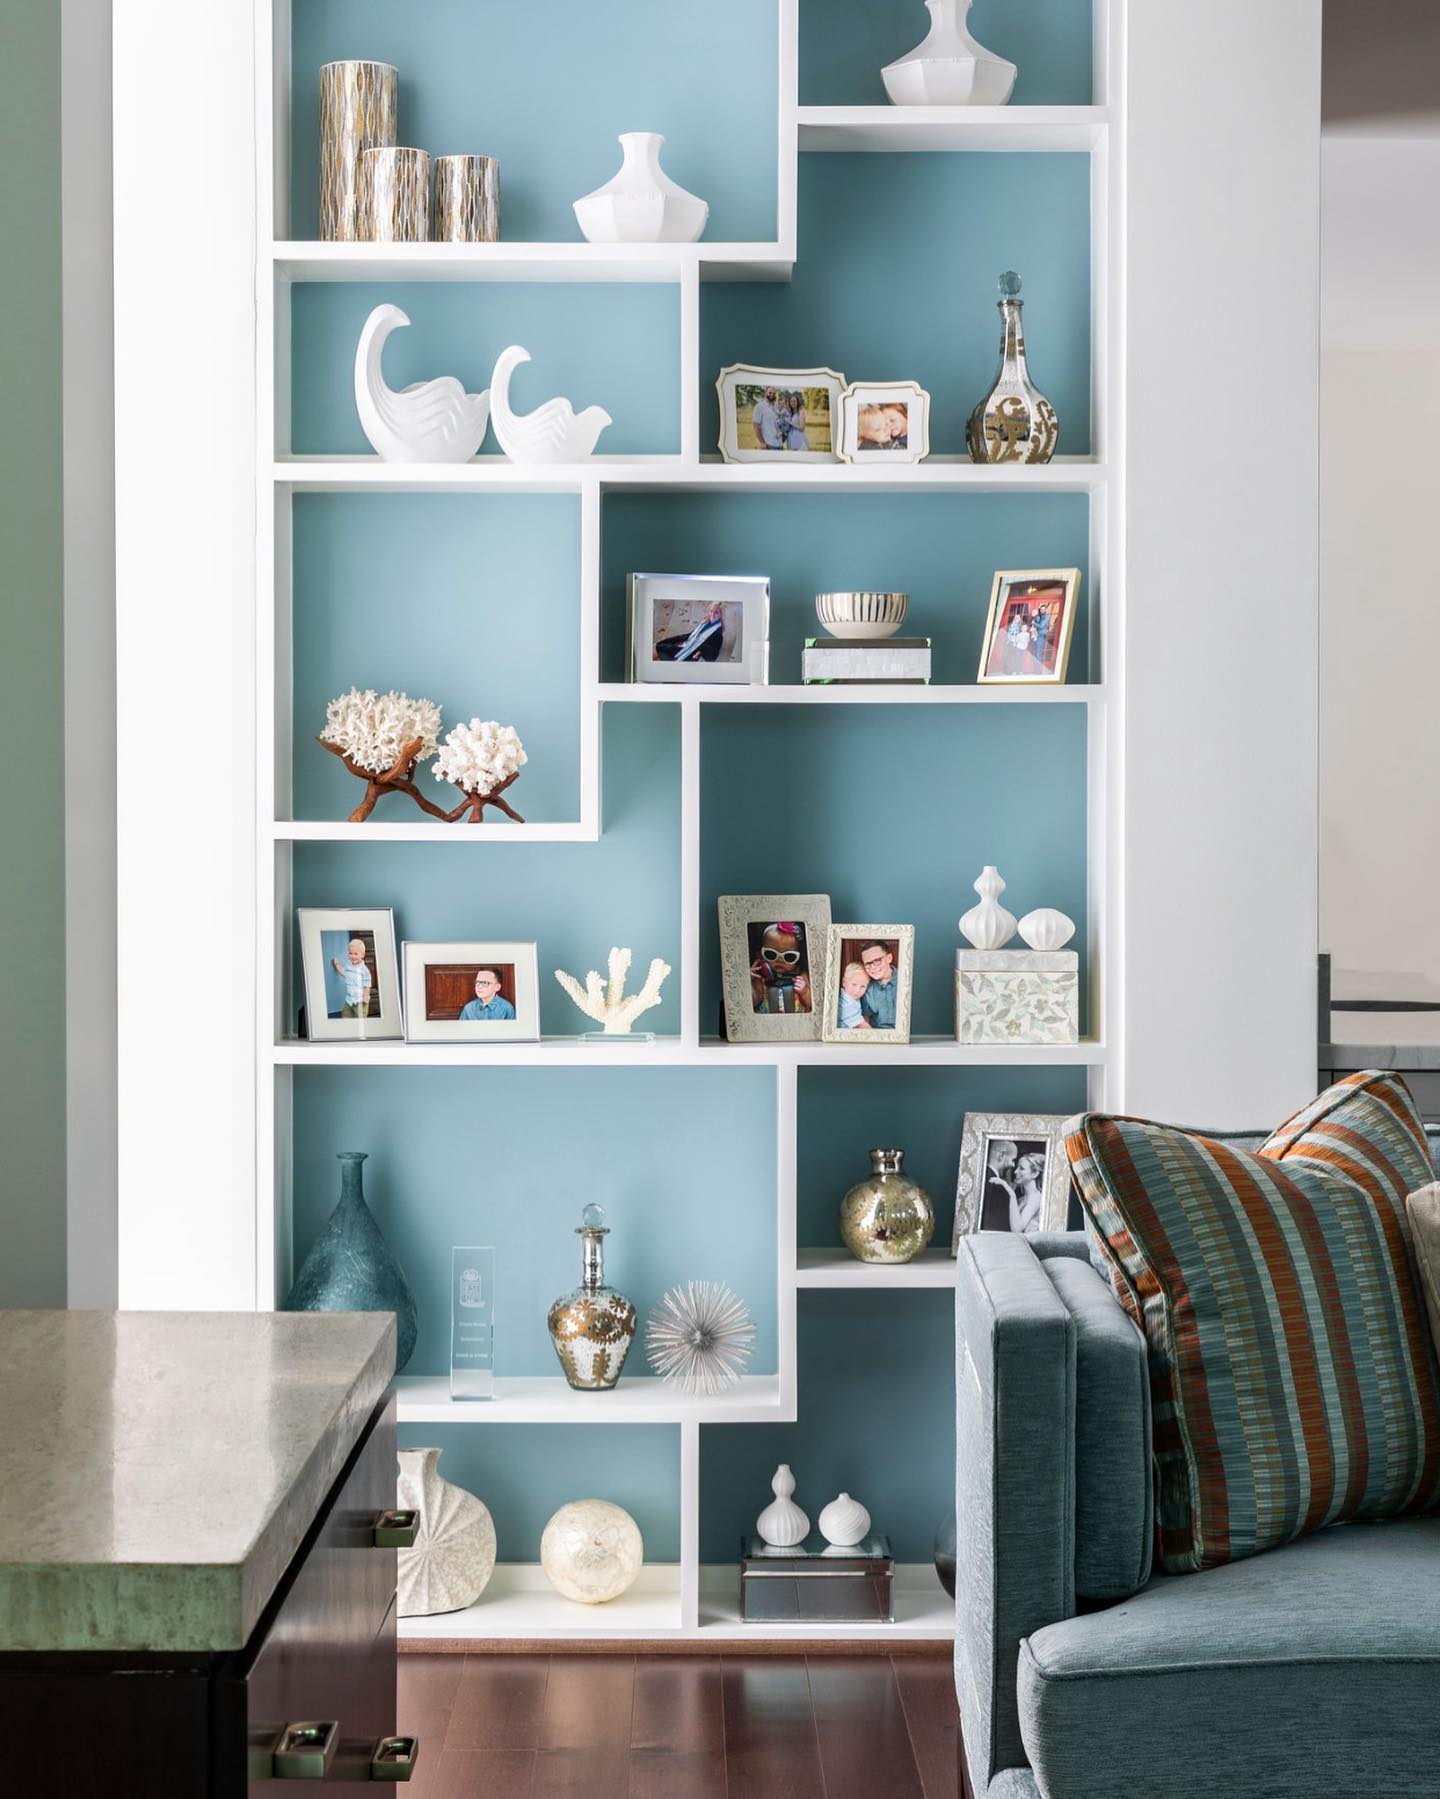 Use of ocean blue paint in the back of bookshelves framed in white